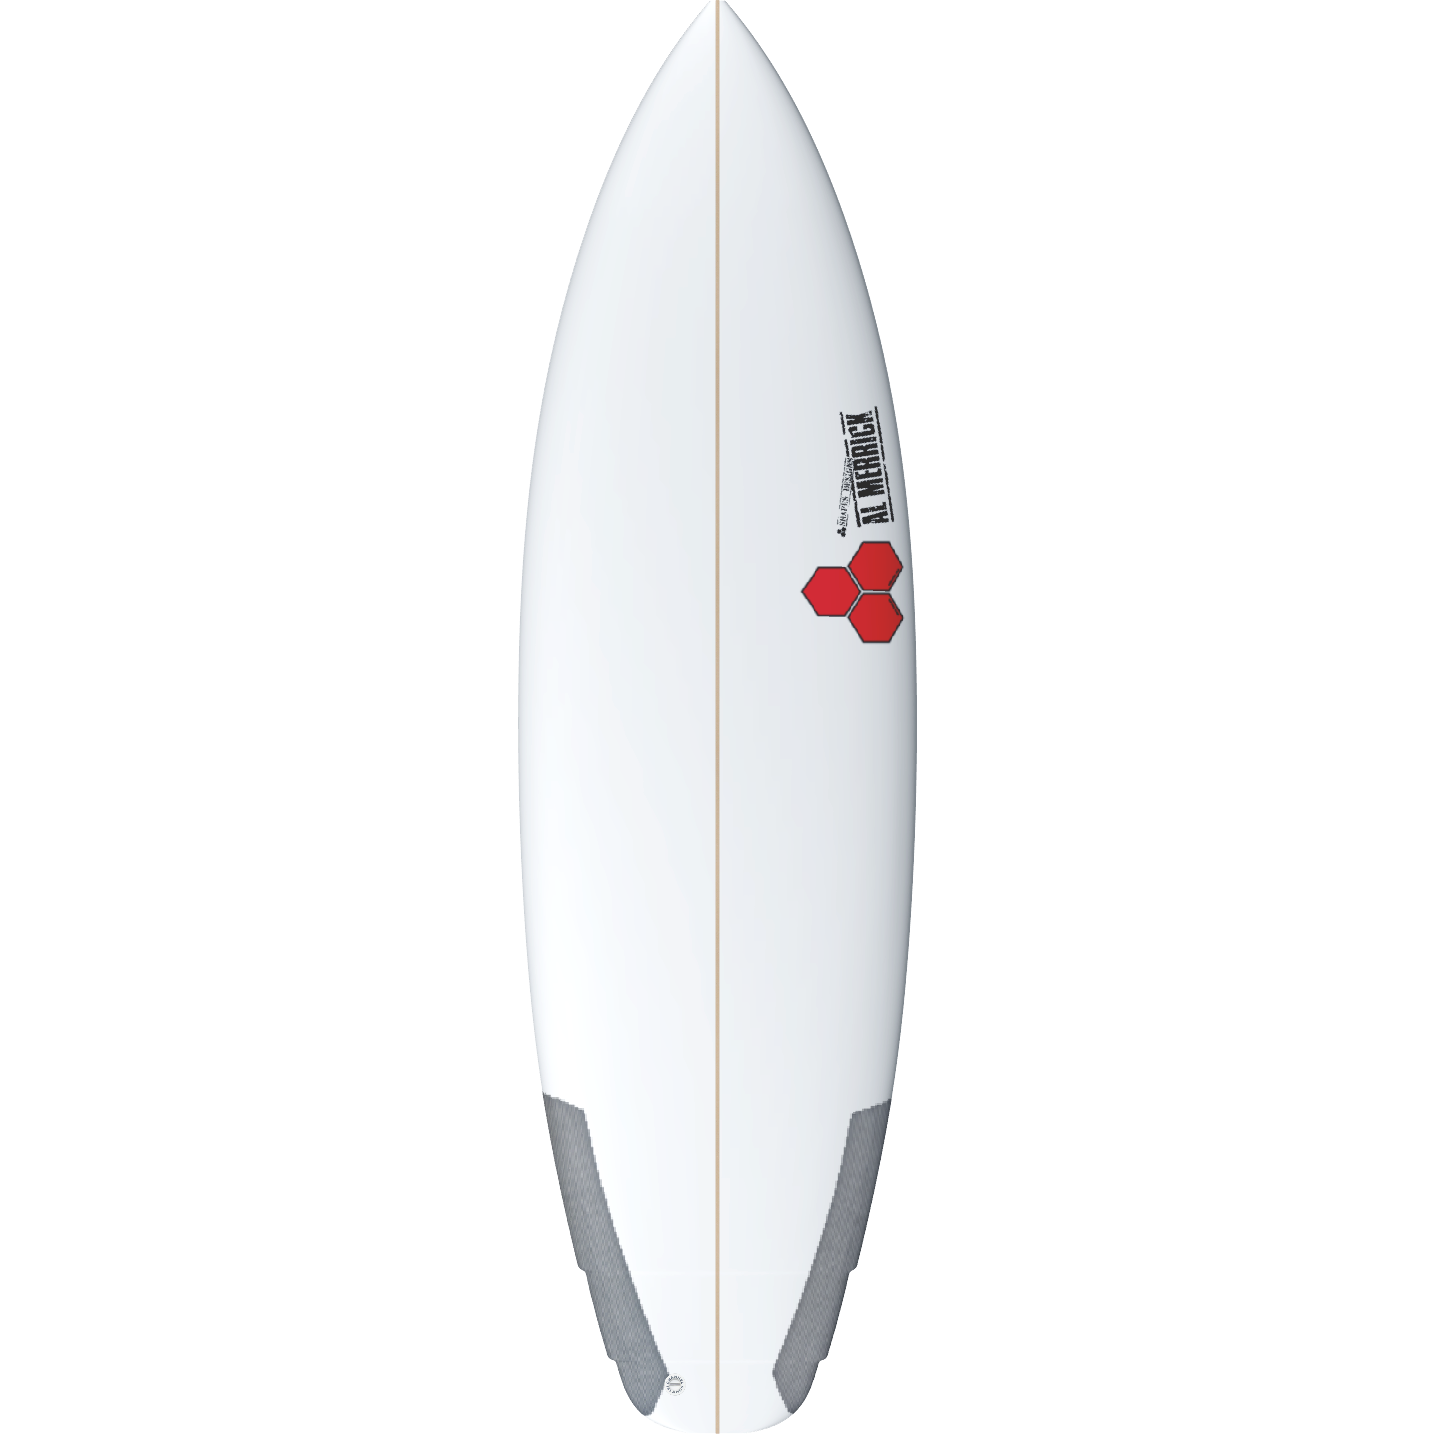 Channel Islands - #4 Surfboard